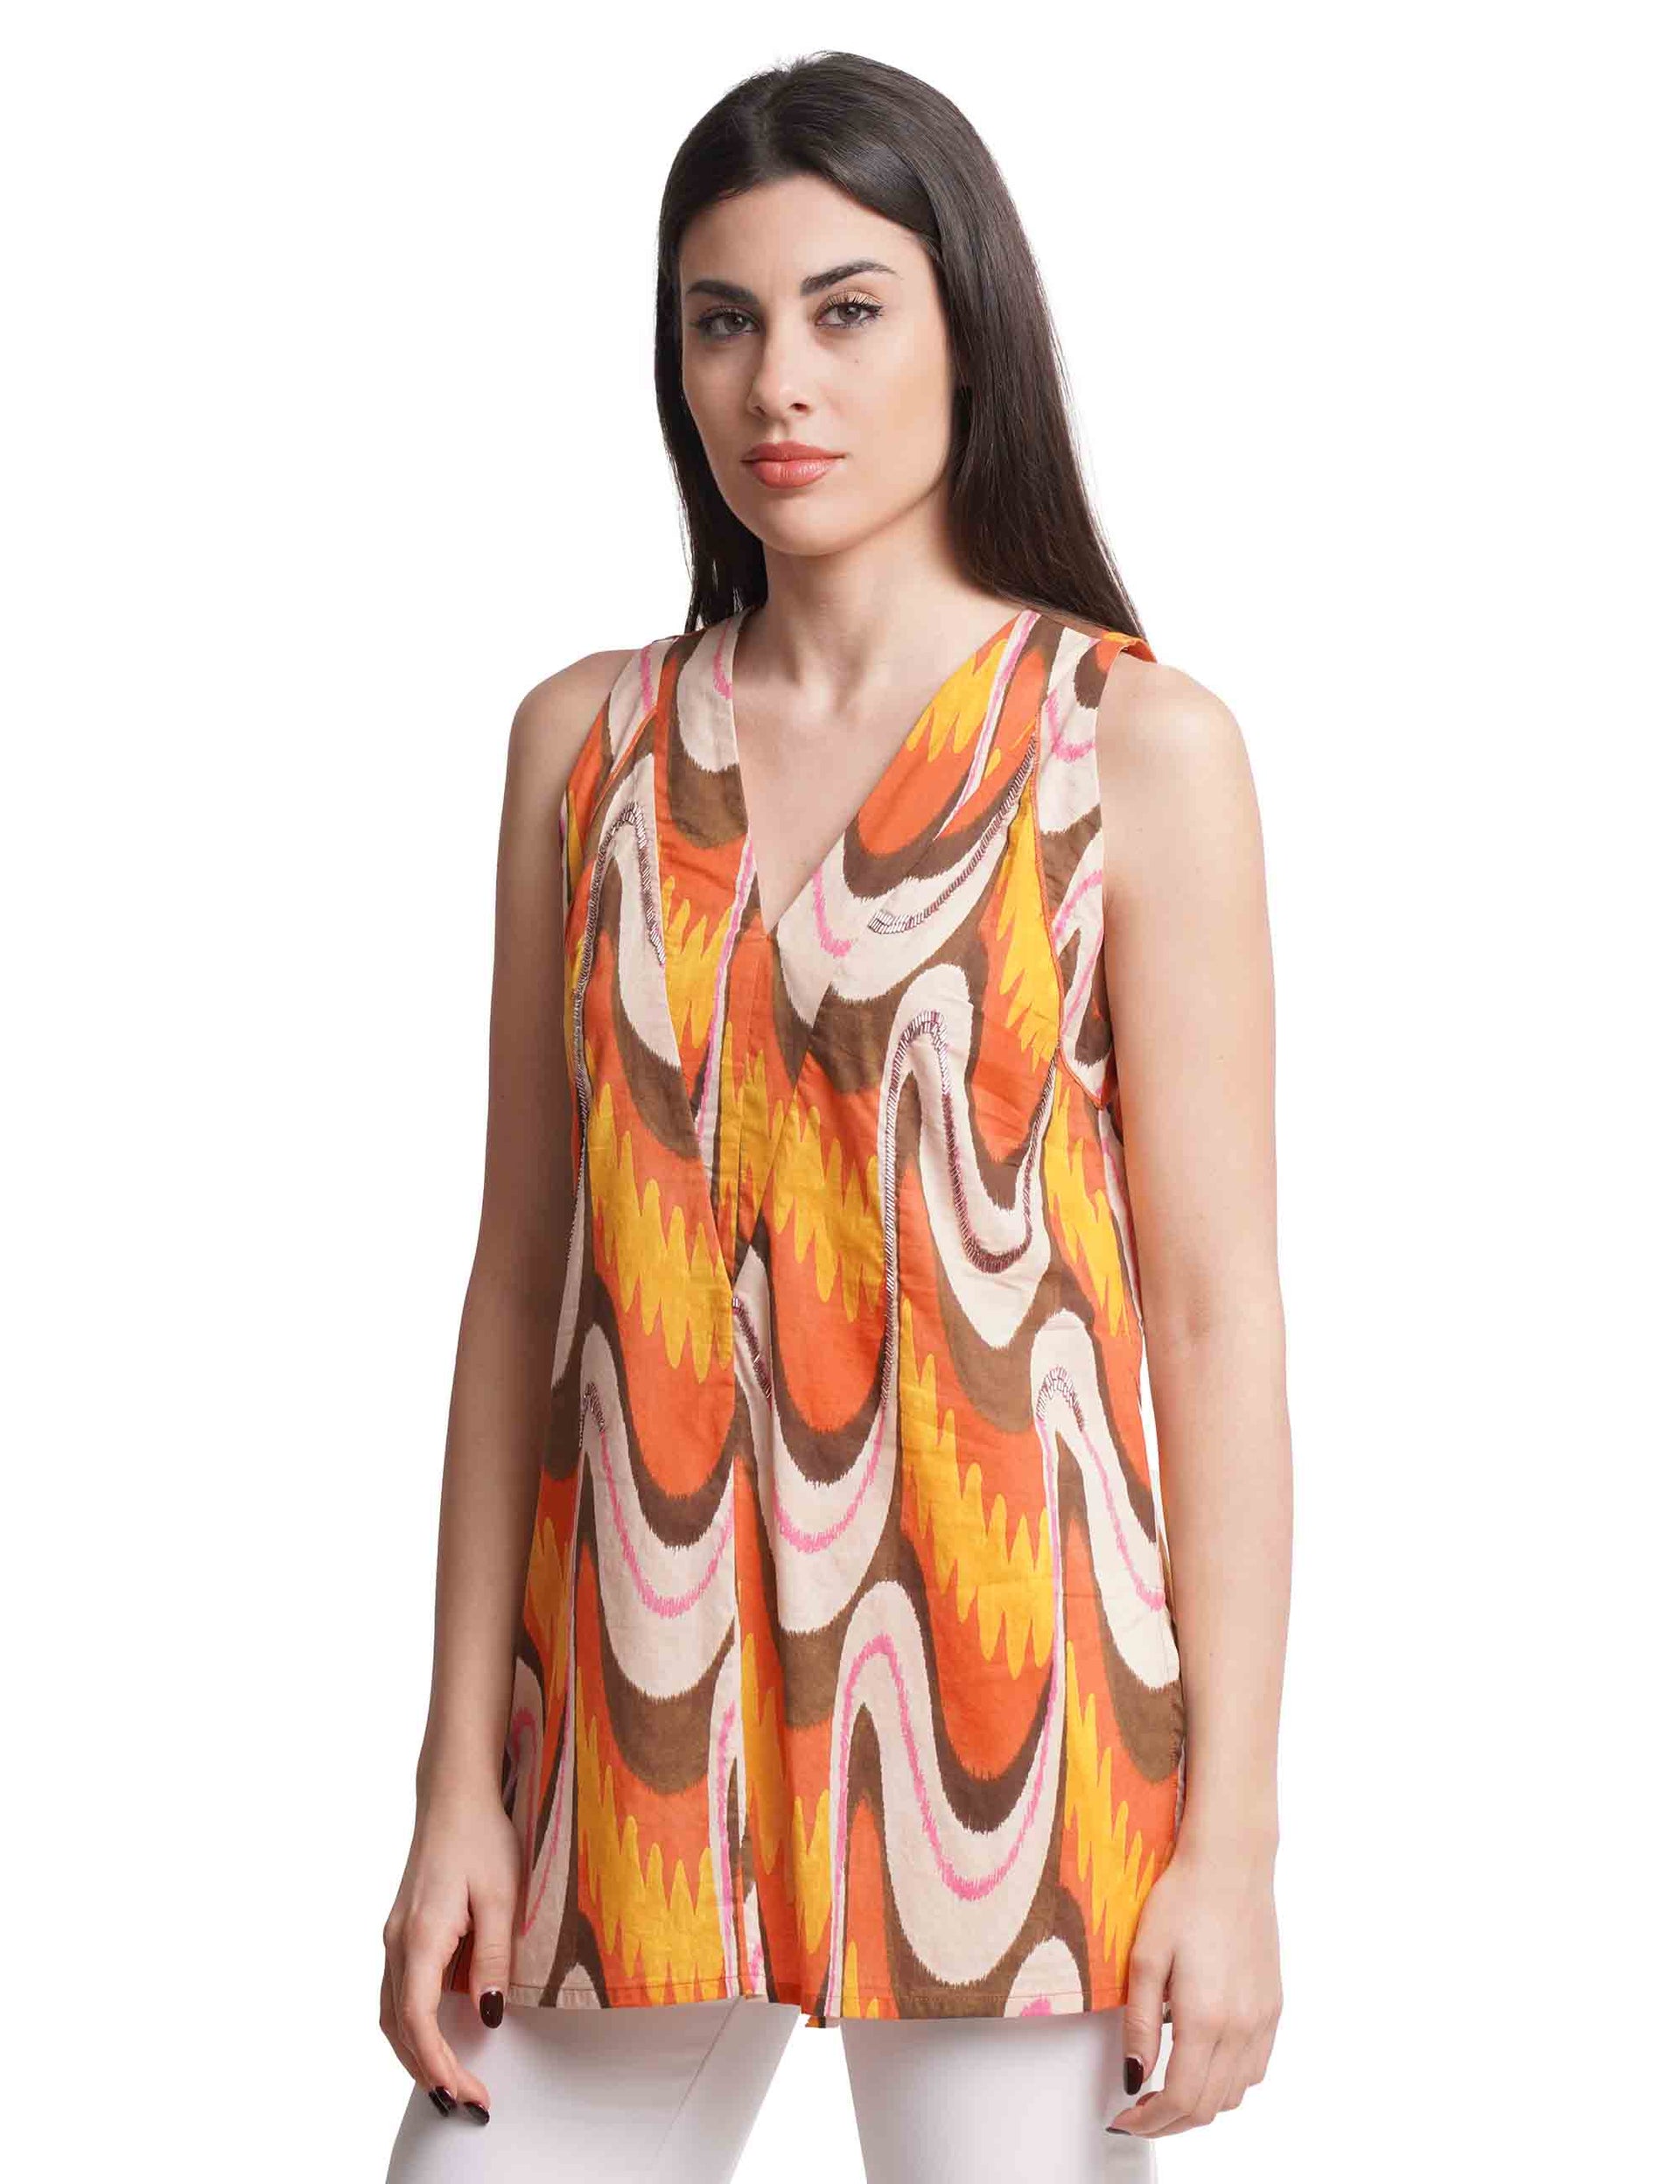 Ikat Wave Muslin women's top in orange patterned cotton